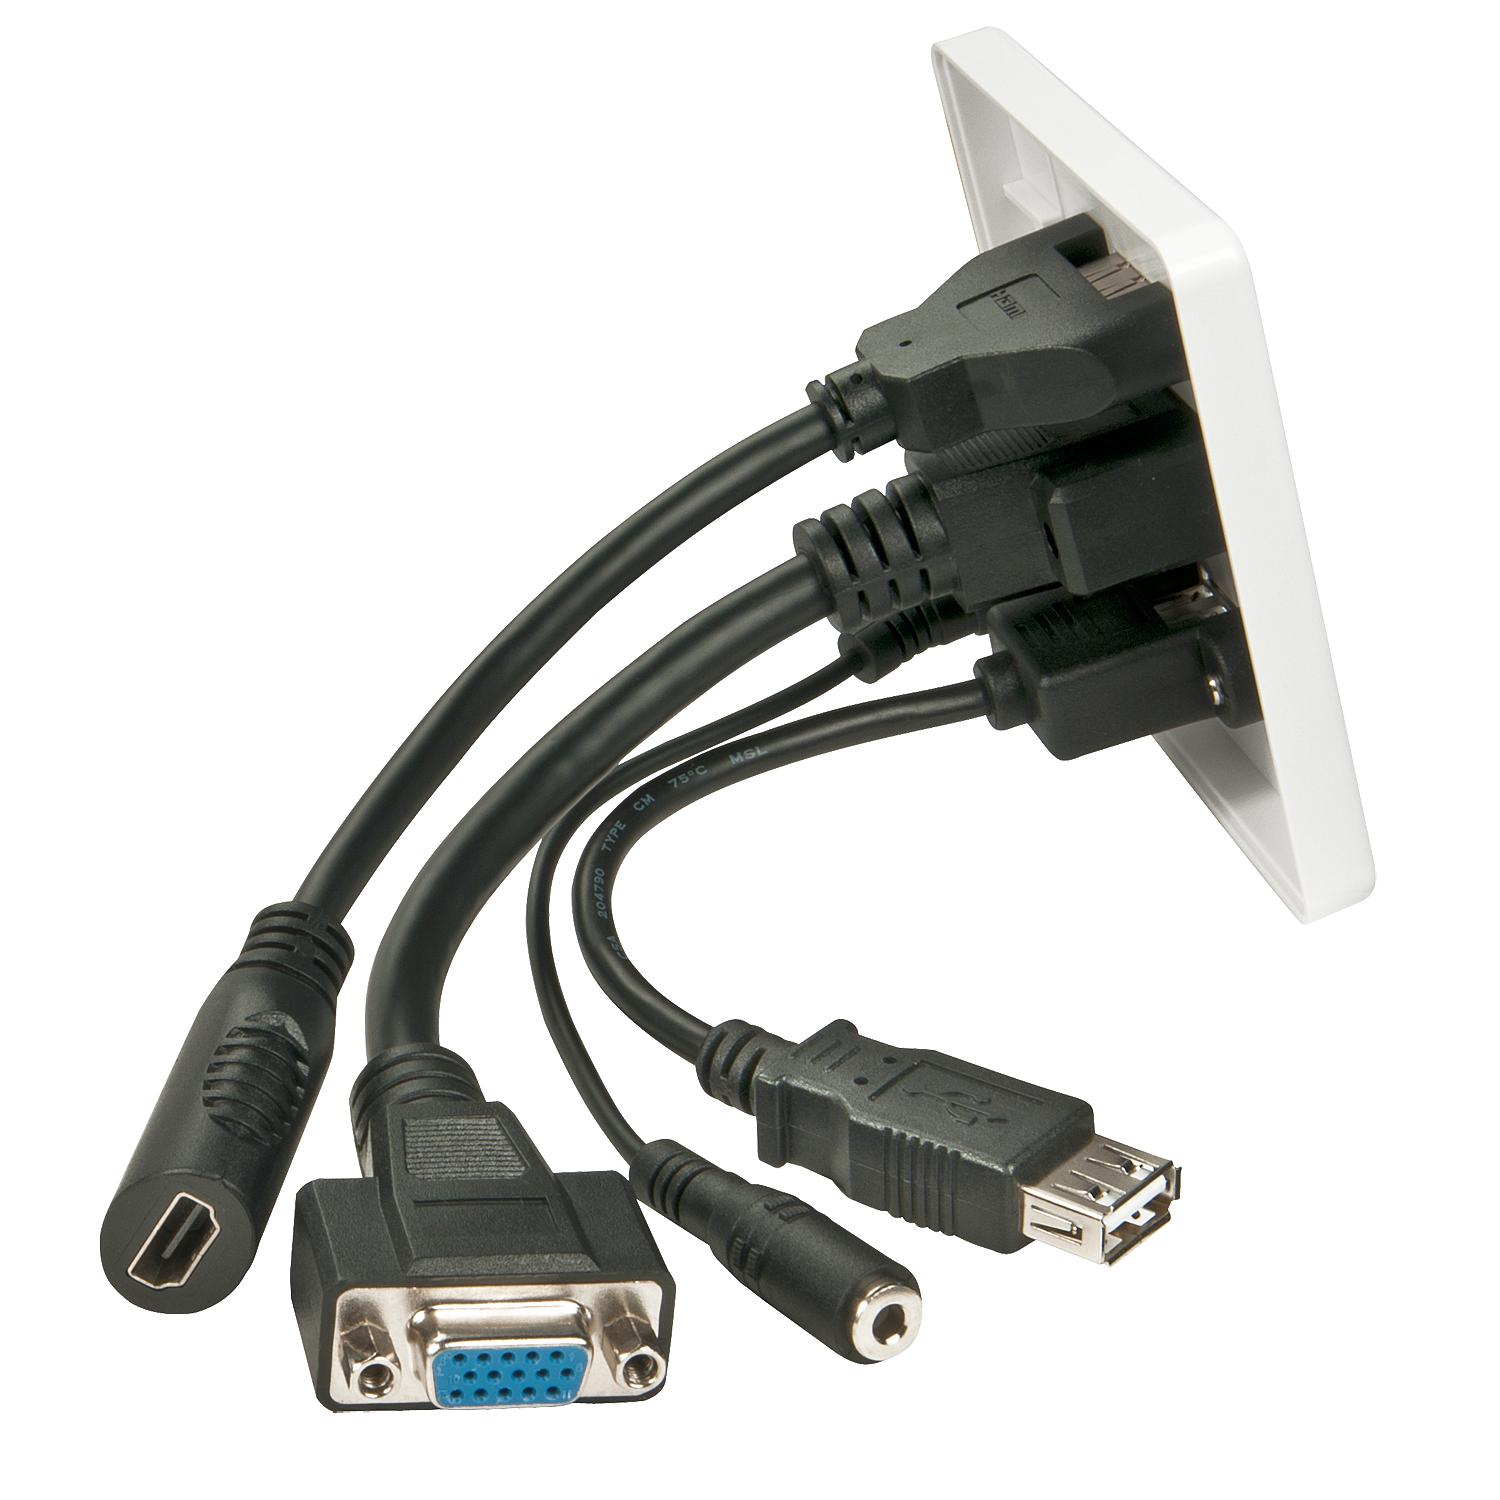 Lindy Câble adaptateur MHL vers HDMI - Fiche technique 